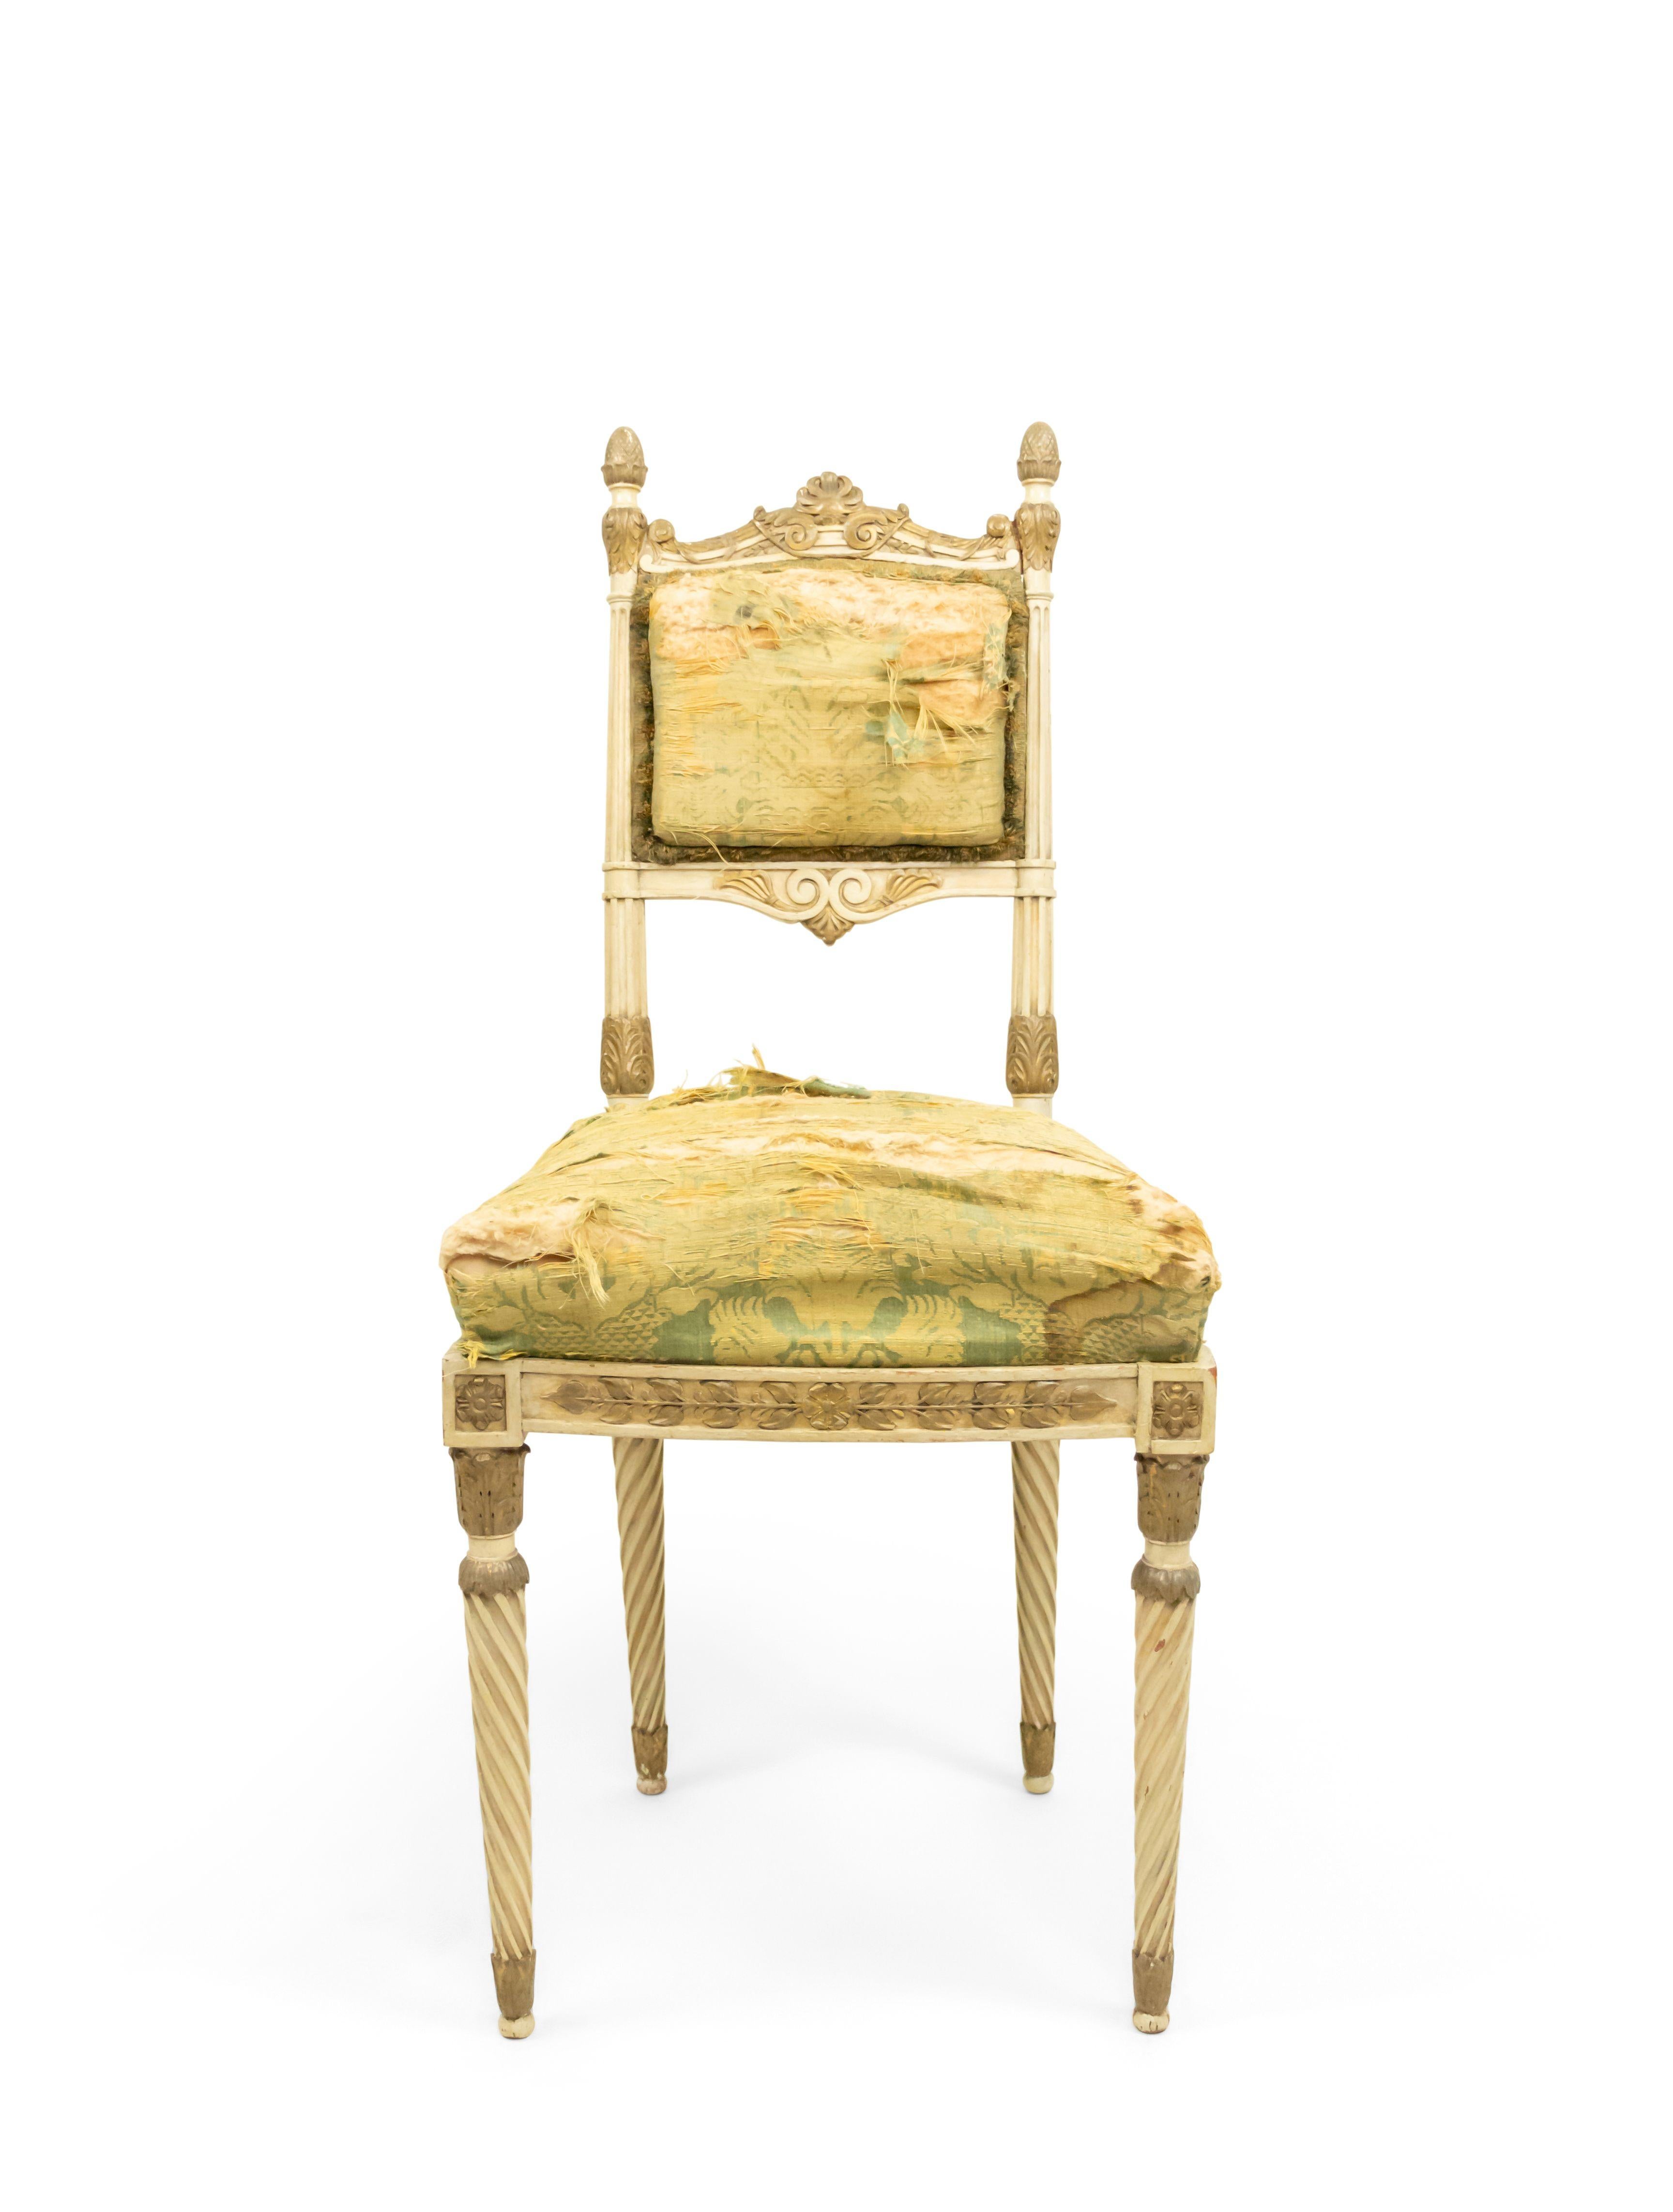 4 Stühle im italienischen Neoklassizismus, paketvergoldet und cremefarben bemalt, mit grünem Seidendamastbezug auf spiralförmig geriffelten, gedrechselten Beinen (19. Jahrhundert)
